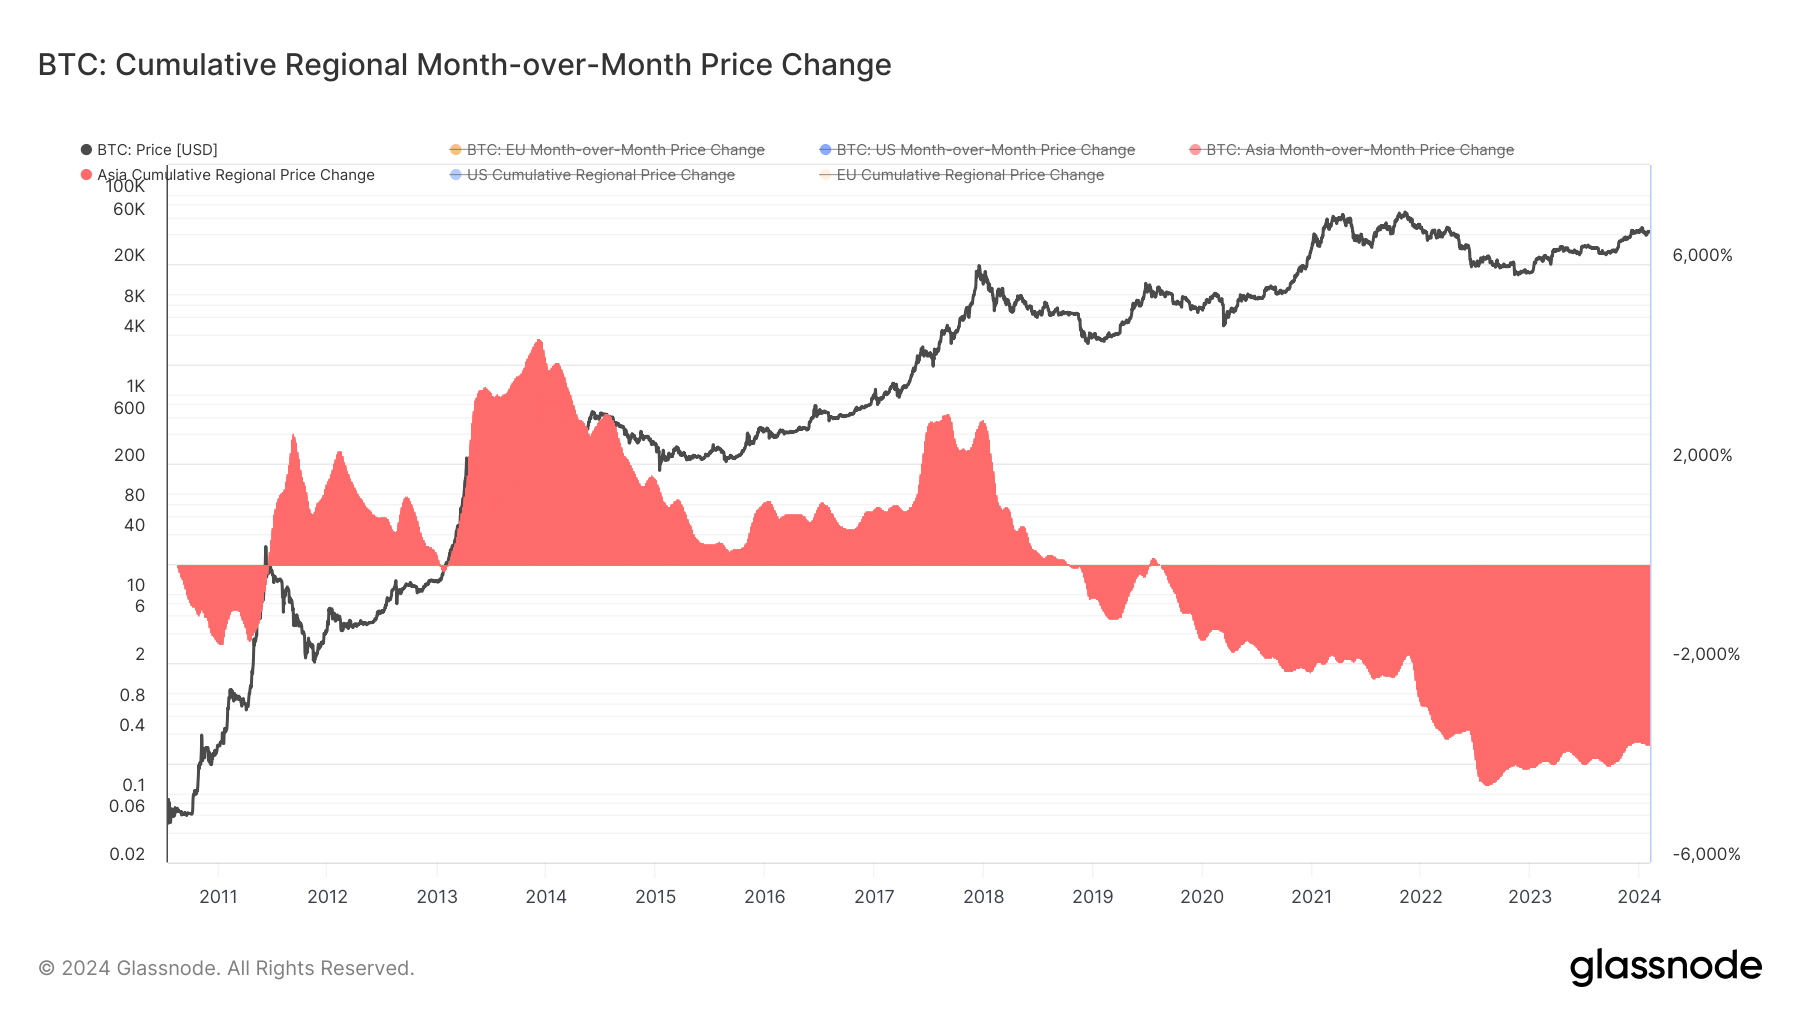 Mudança de preço cumulativa regional mensal da Ásia: (Fonte: Glassnode)